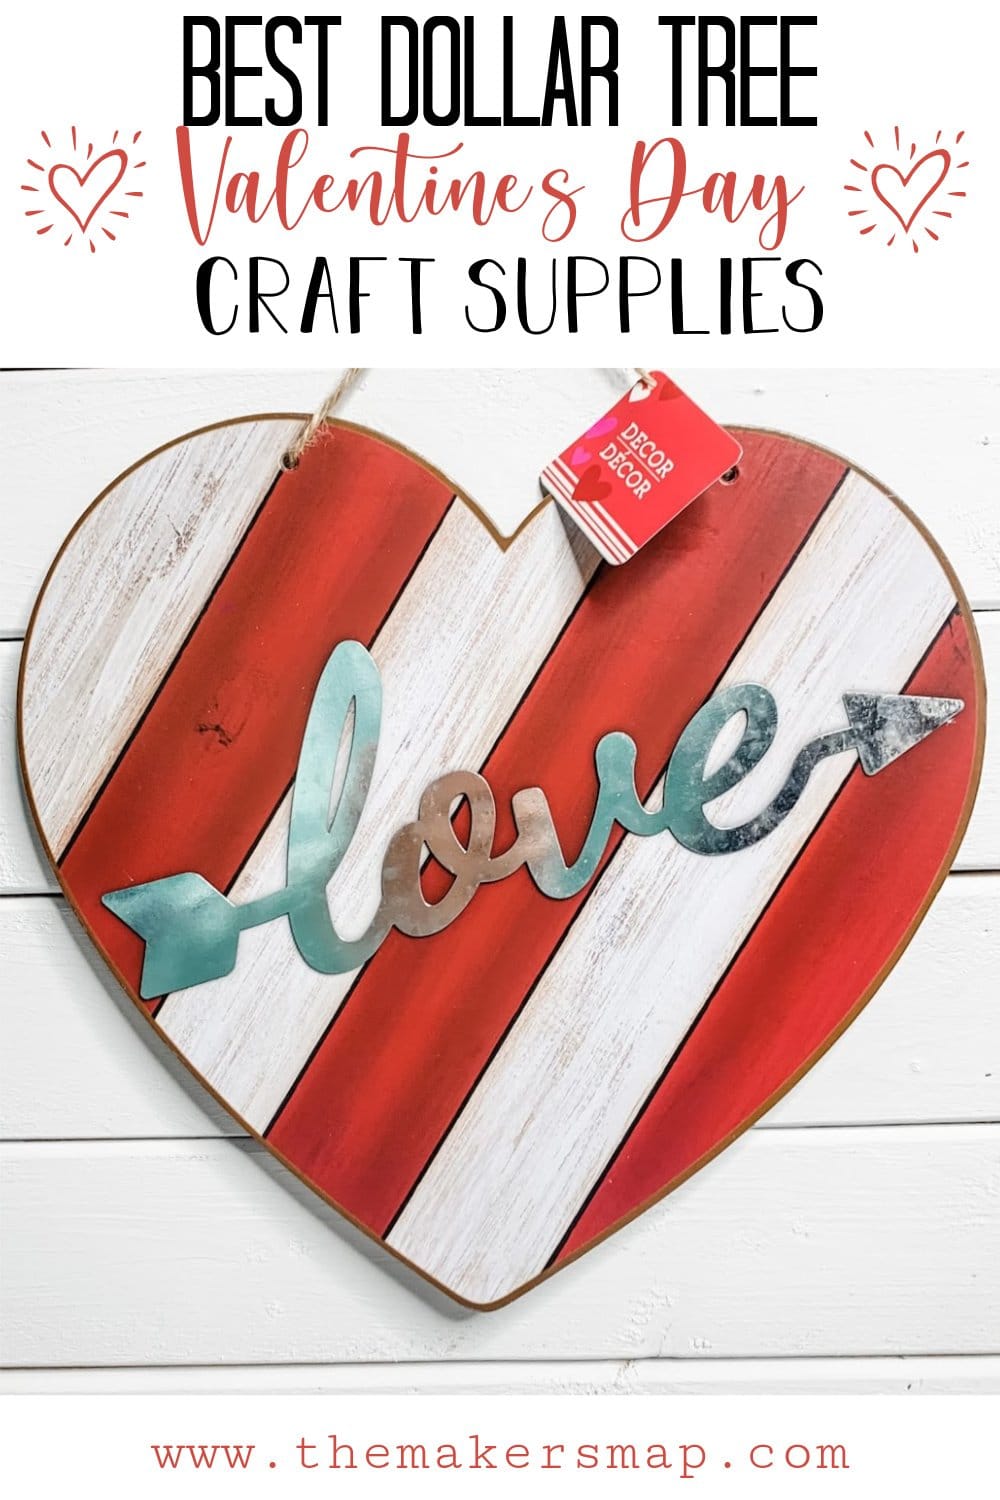 Best Dollar Tree Valentine's Day Craft Supplies - Craft Stash Necessities